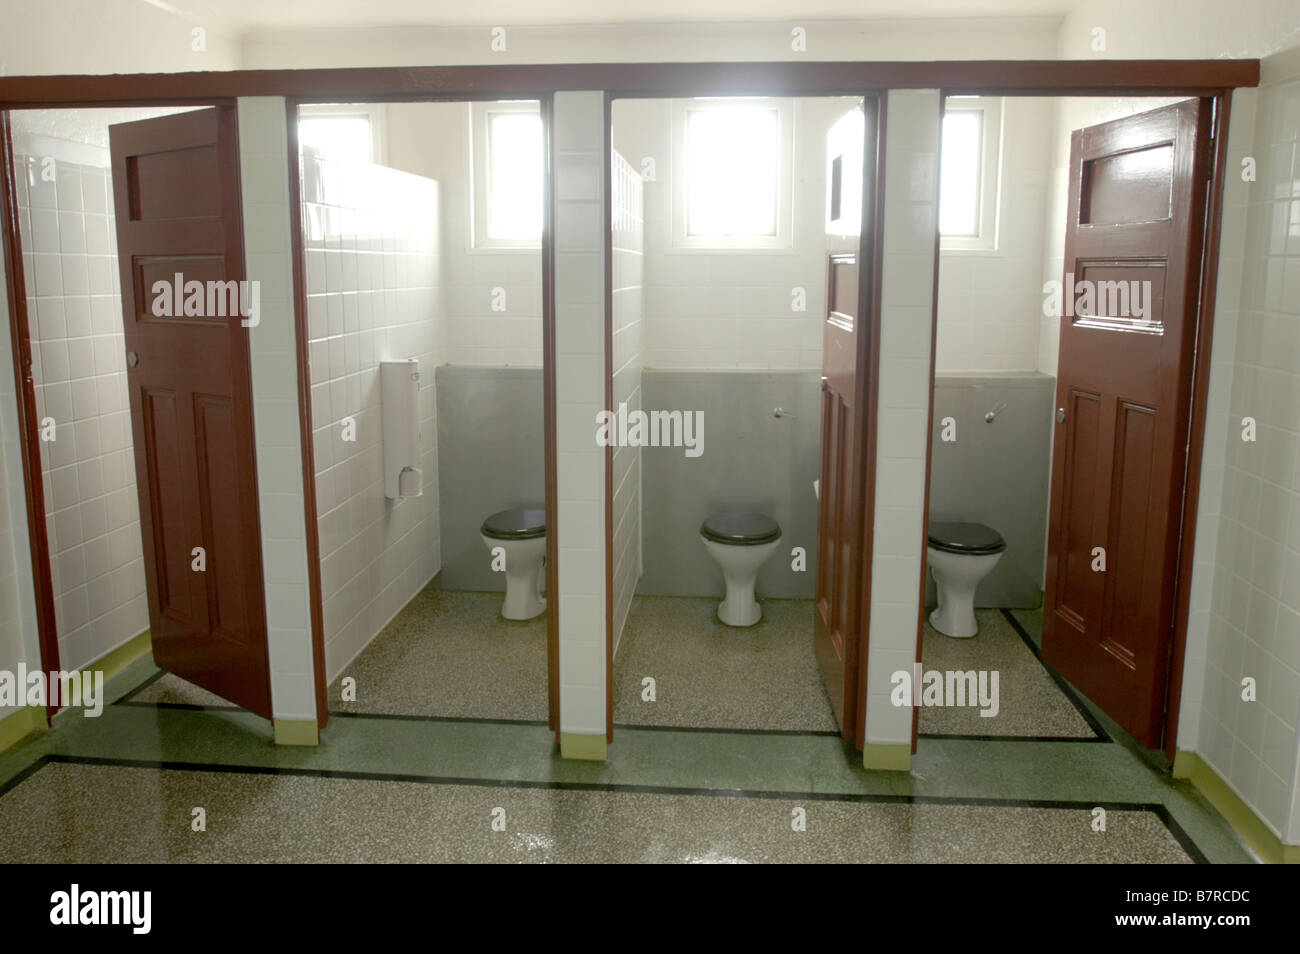 Toilet Doors Uk Fury Over Toilet Signs In British Hotel